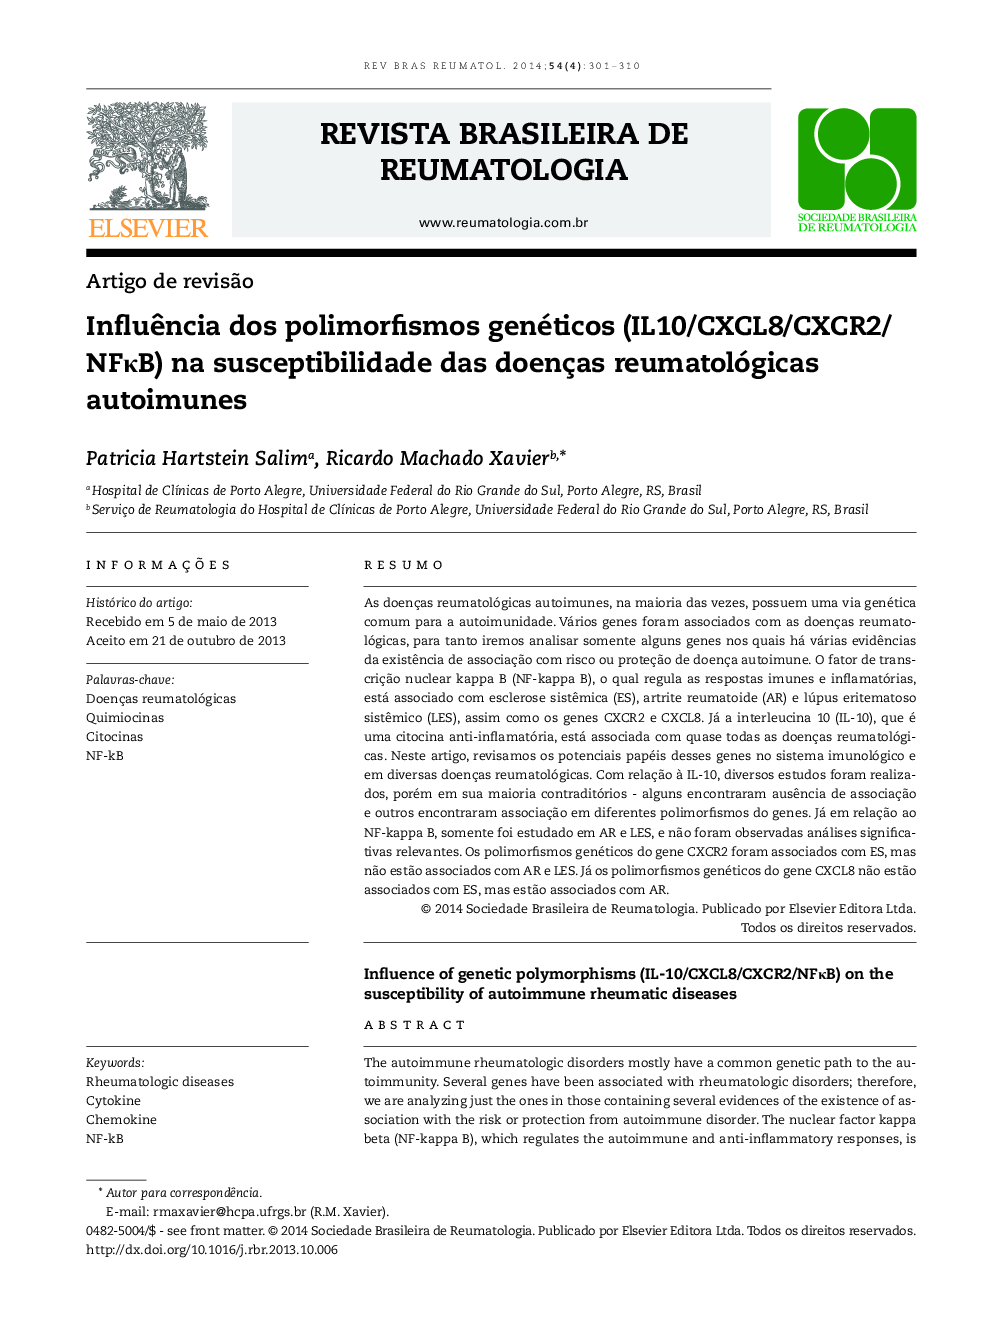 Influência dos polimorfismos genéticos (IL10/CXCL8/CXCR2/ NFκB) na susceptibilidade das doenças reumatológicas autoimunes